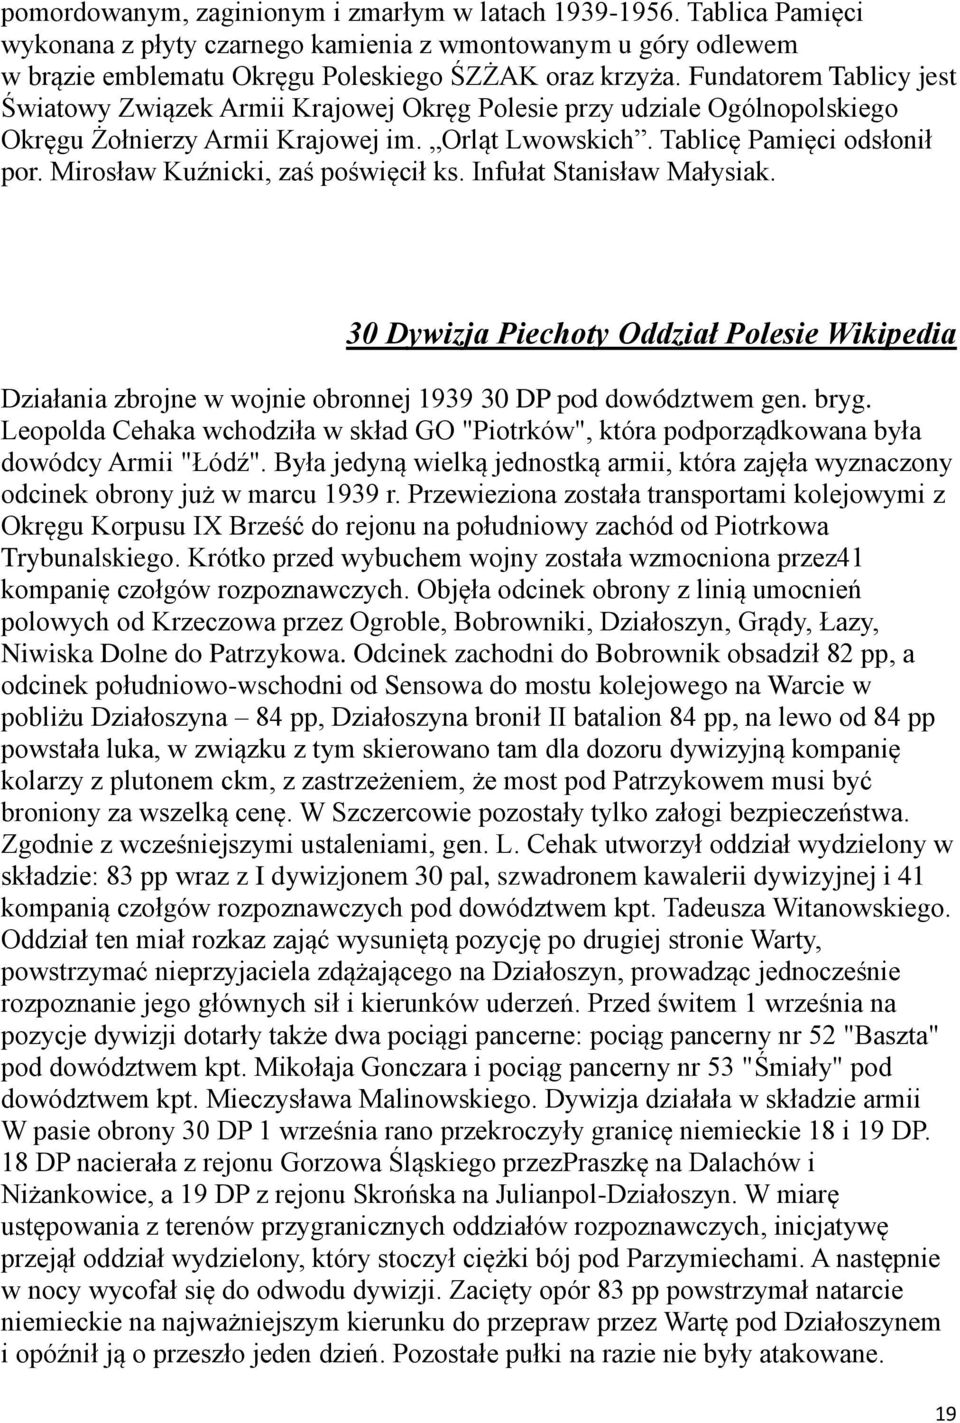 Mirosław Kuźnicki, zaś poświęcił ks. Infułat Stanisław Małysiak. 30 Dywizja Piechoty Oddział Polesie Wikipedia Działania zbrojne w wojnie obronnej 1939 30 DP pod dowództwem gen. bryg.